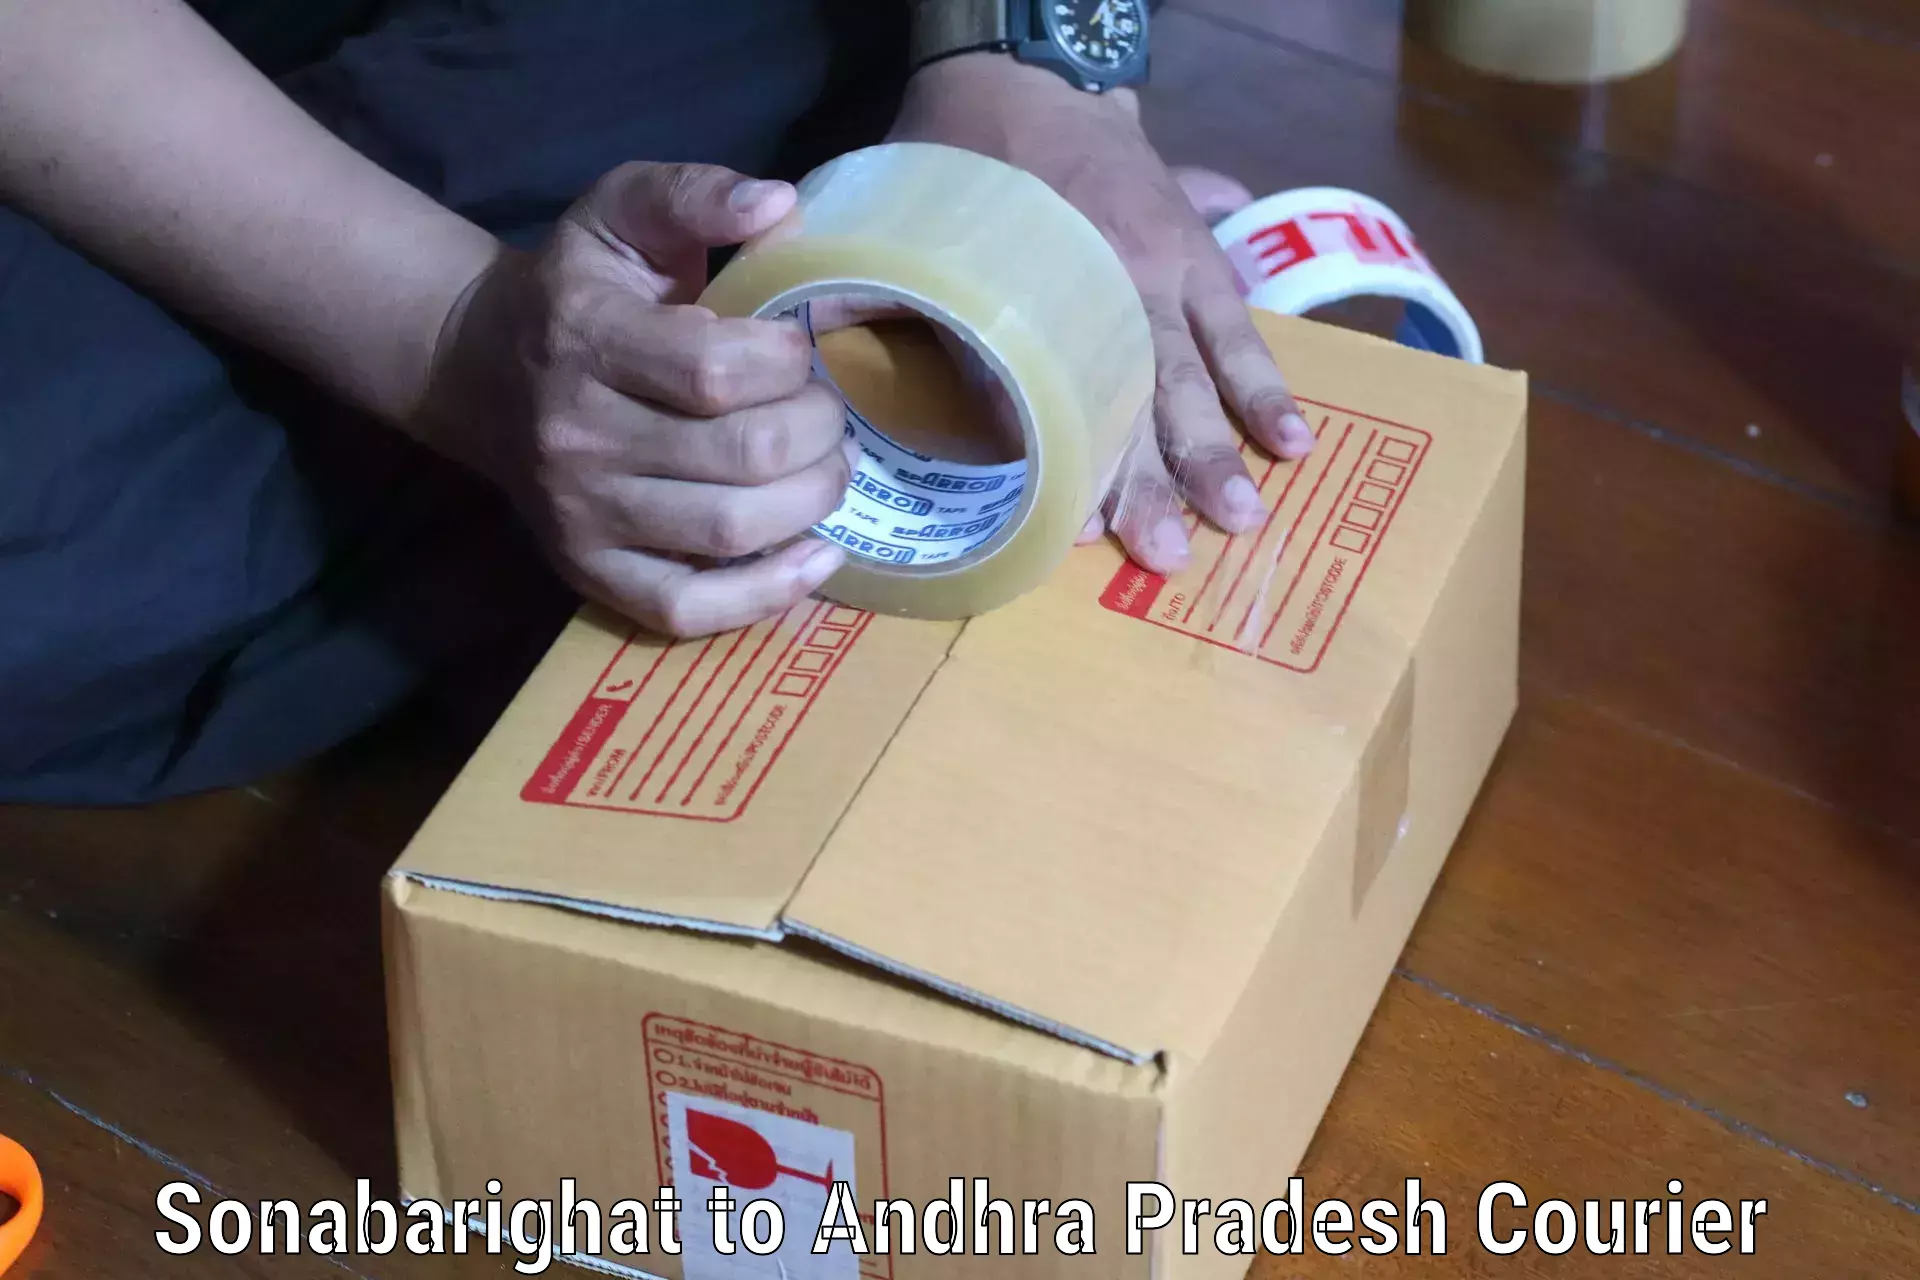 Urgent courier needs Sonabarighat to Rajayyapeta